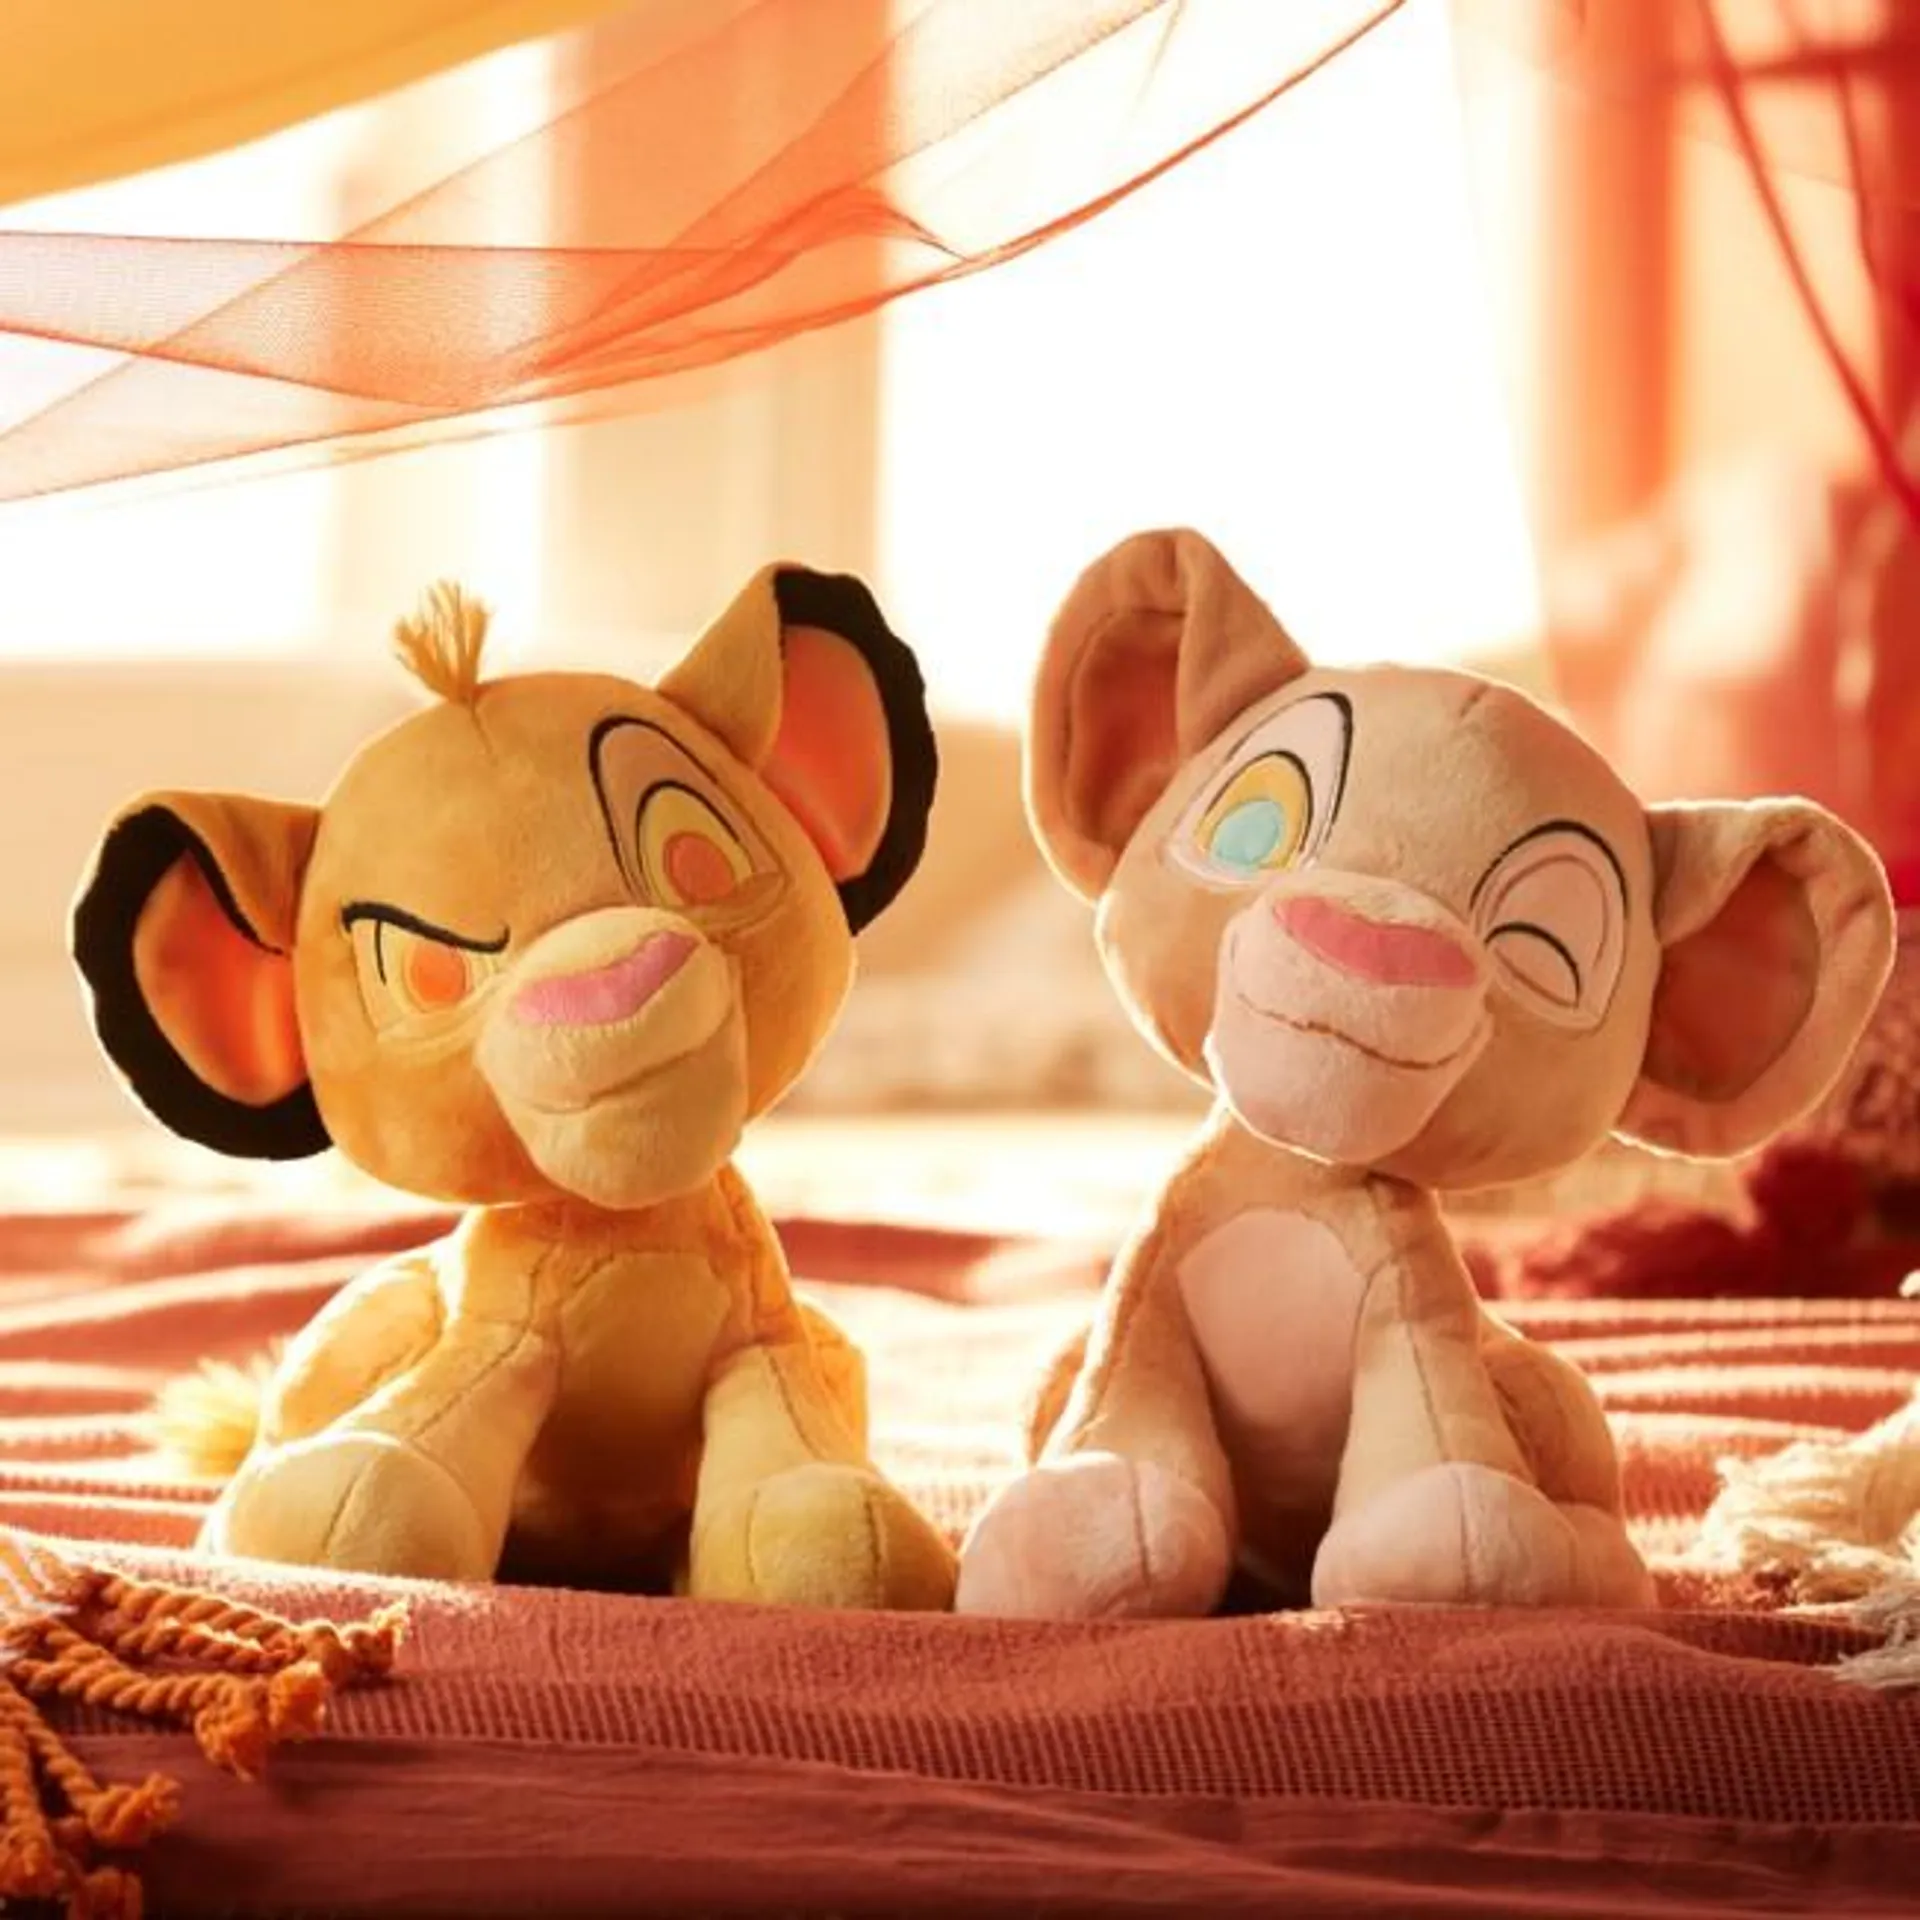 Simba and Nala Small Plush Set, The Lion King 30th Anniversary